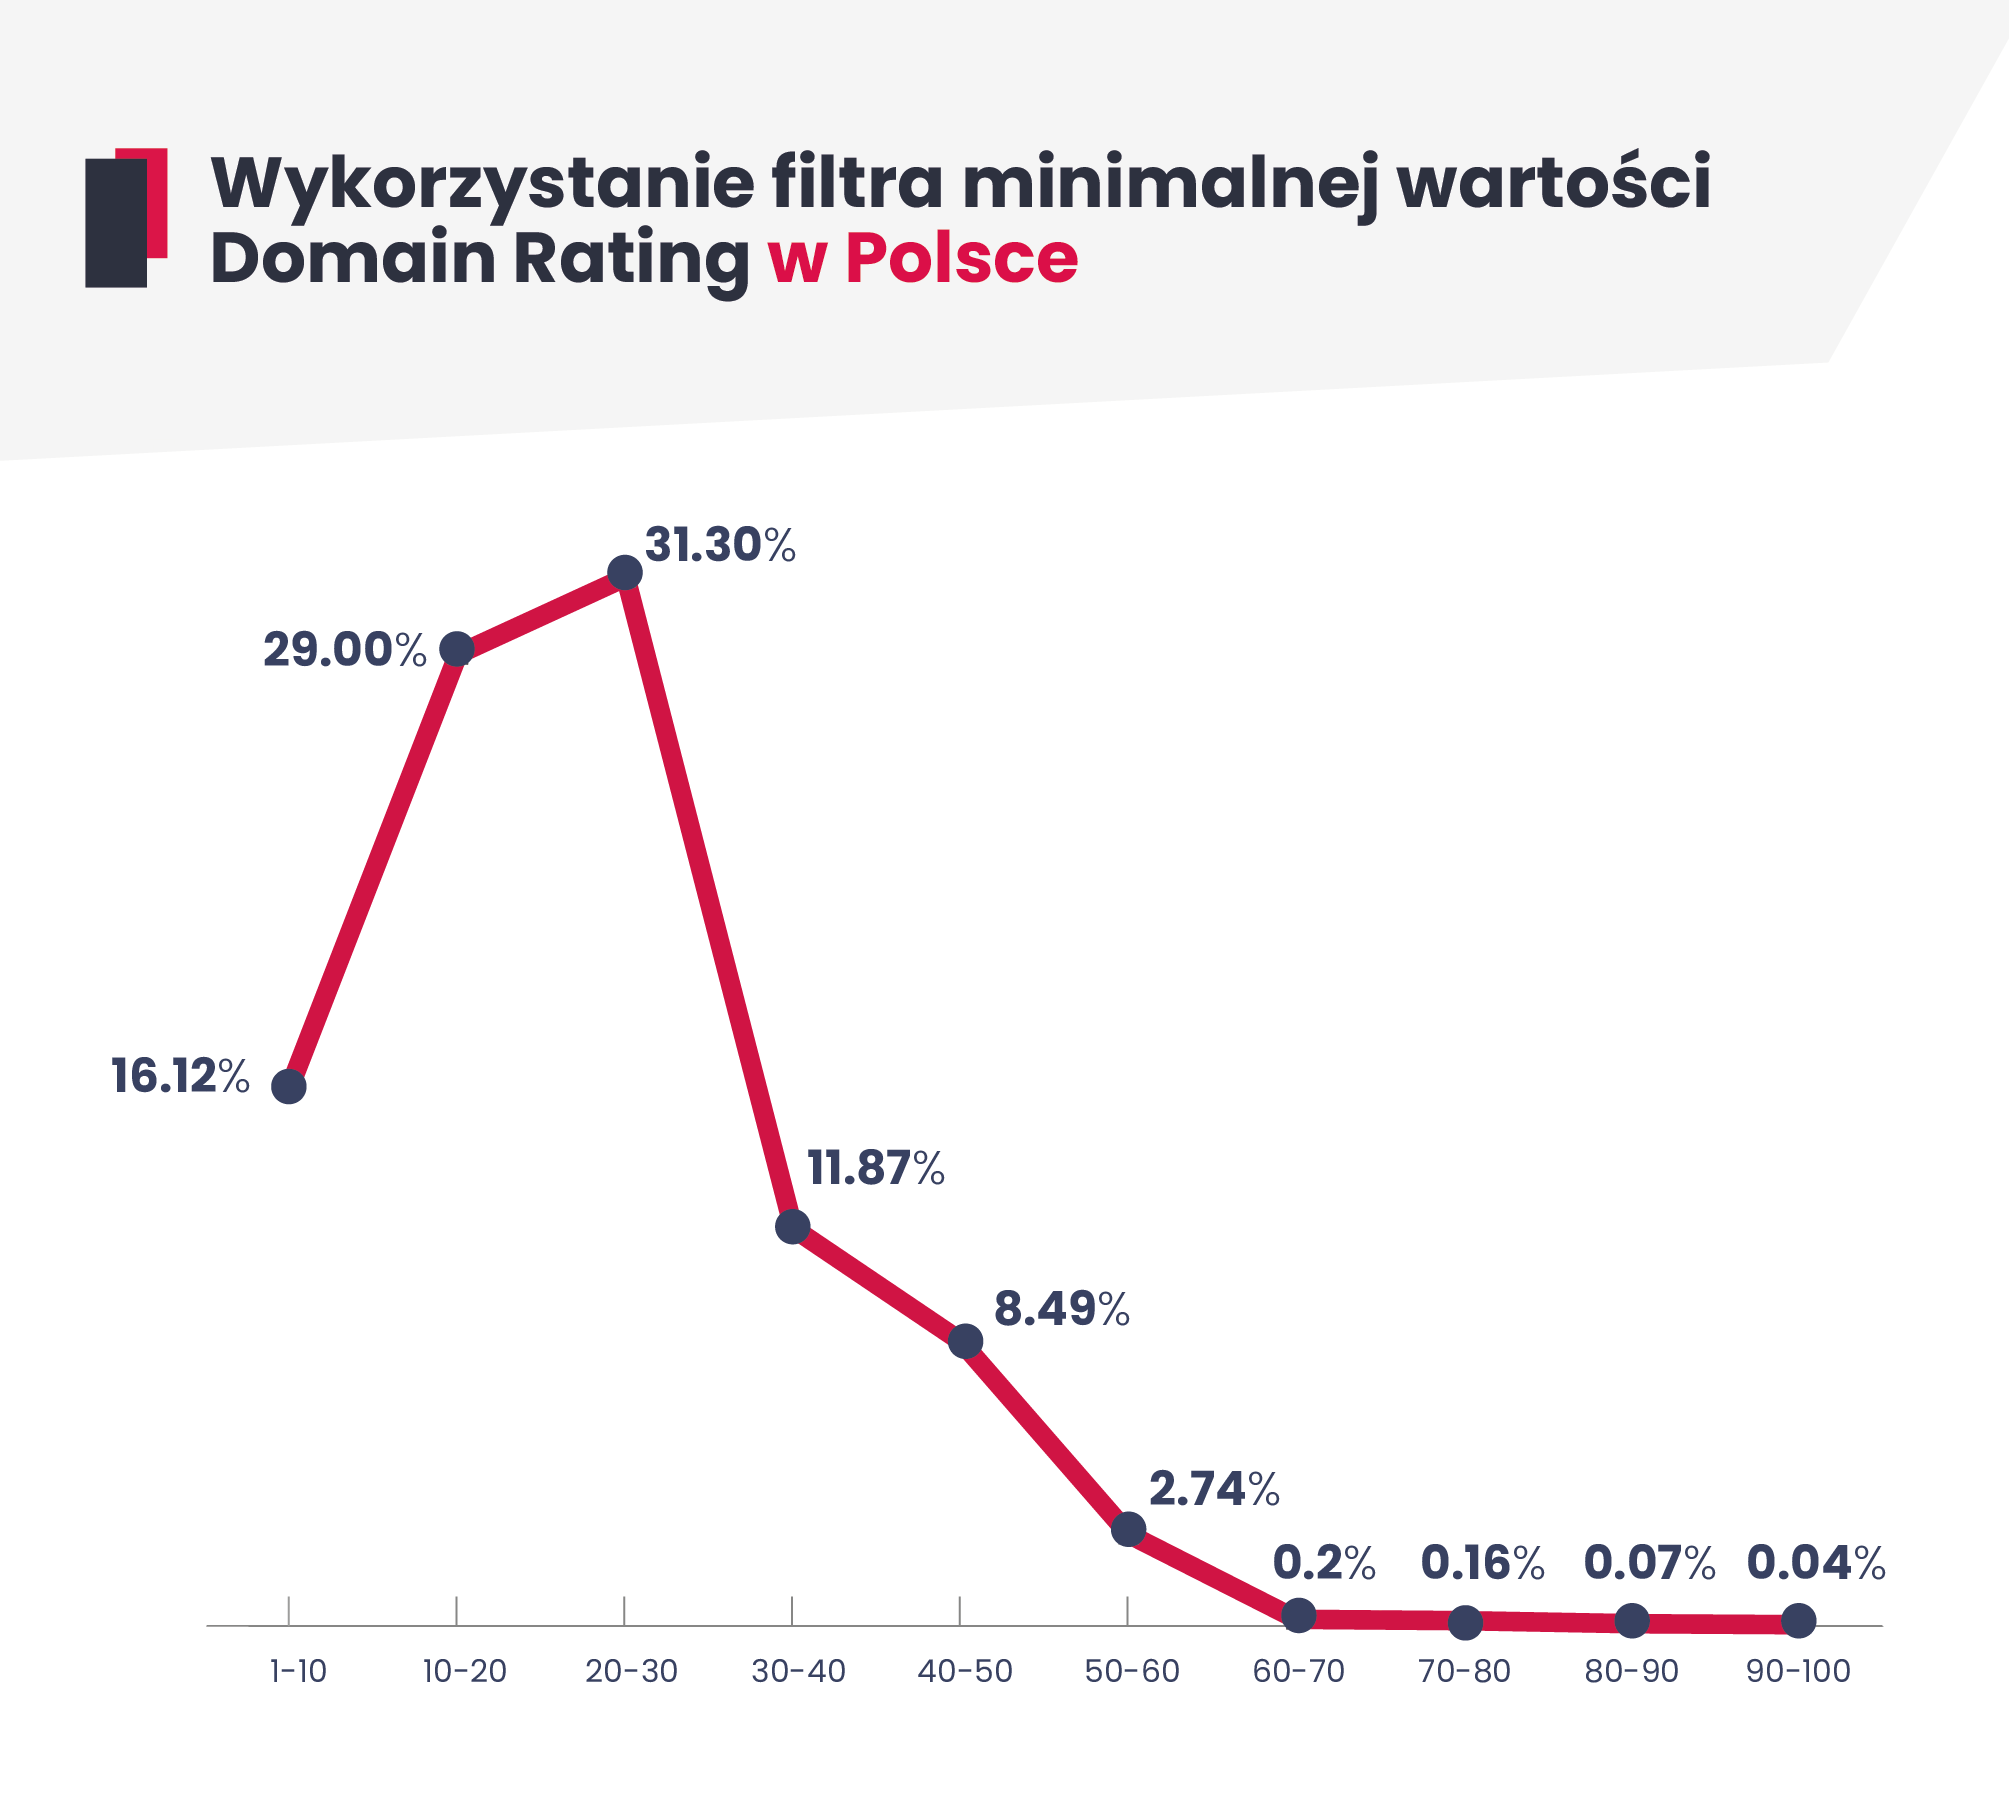 Wykres liniowy obrazujący dystrybucję wybierania wartości minimalnej Domain Rating na rynku polskim w platformie WhitePress.